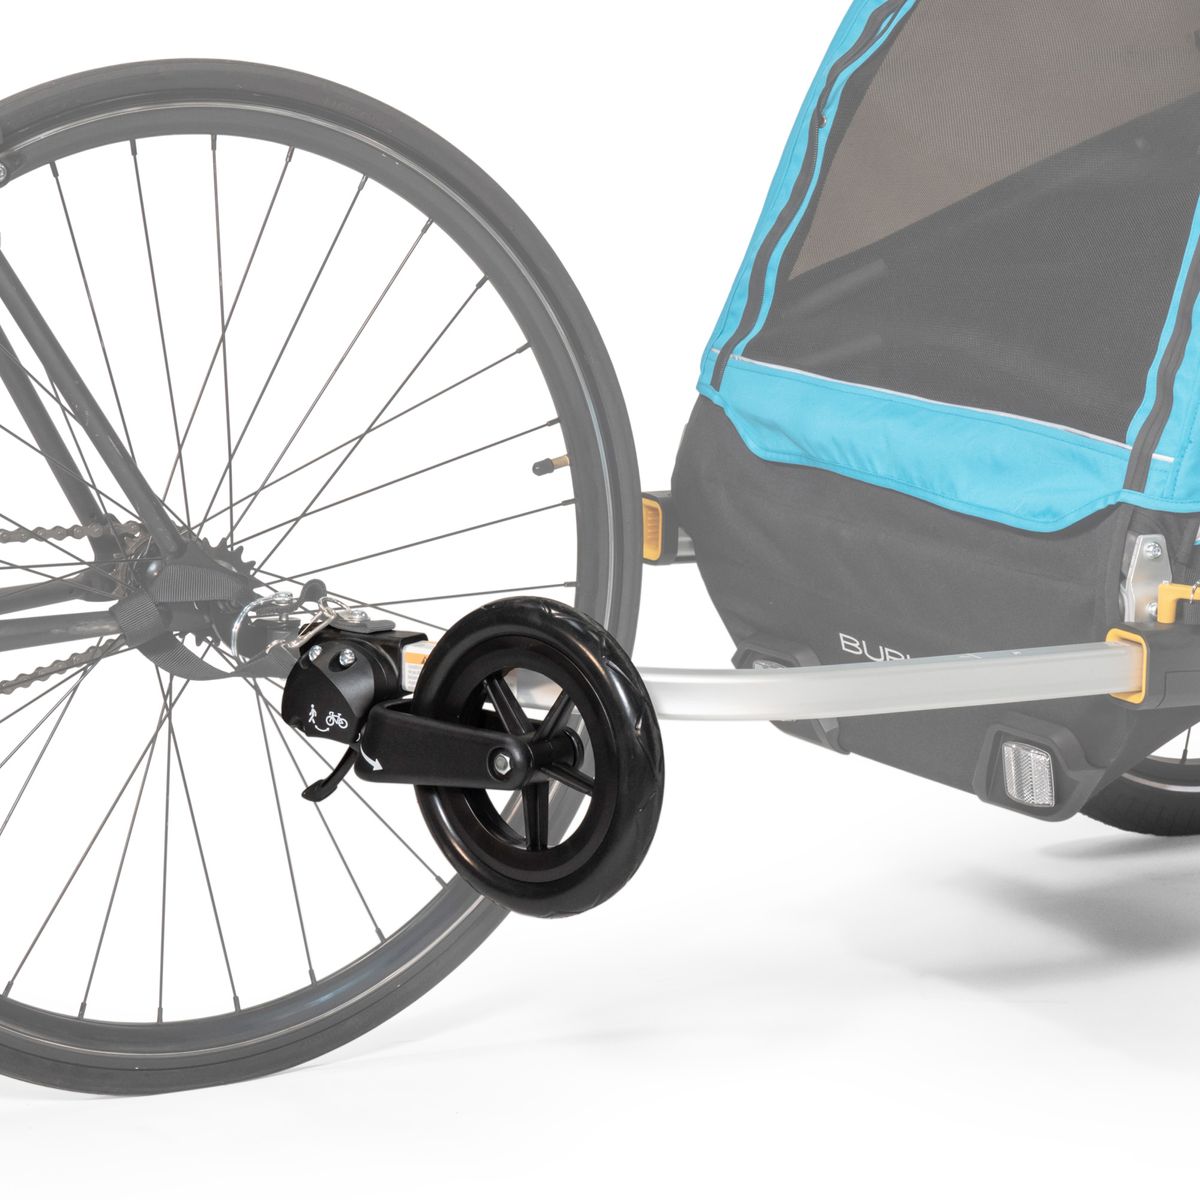 Burley 1-Wheel Stroller Kit